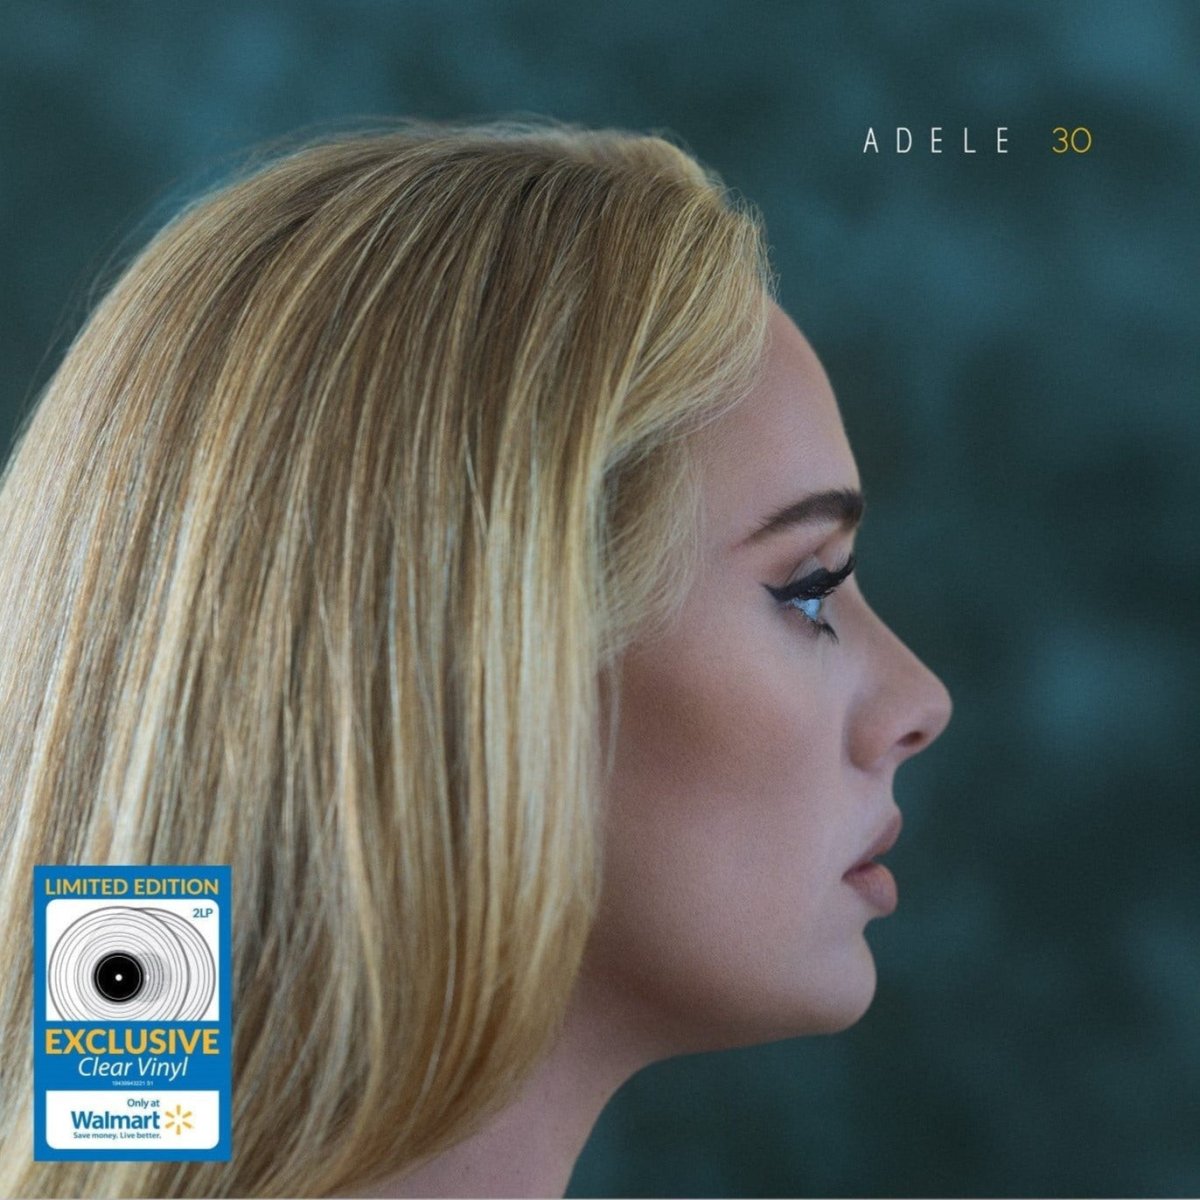 Adele - 30 Vinyl